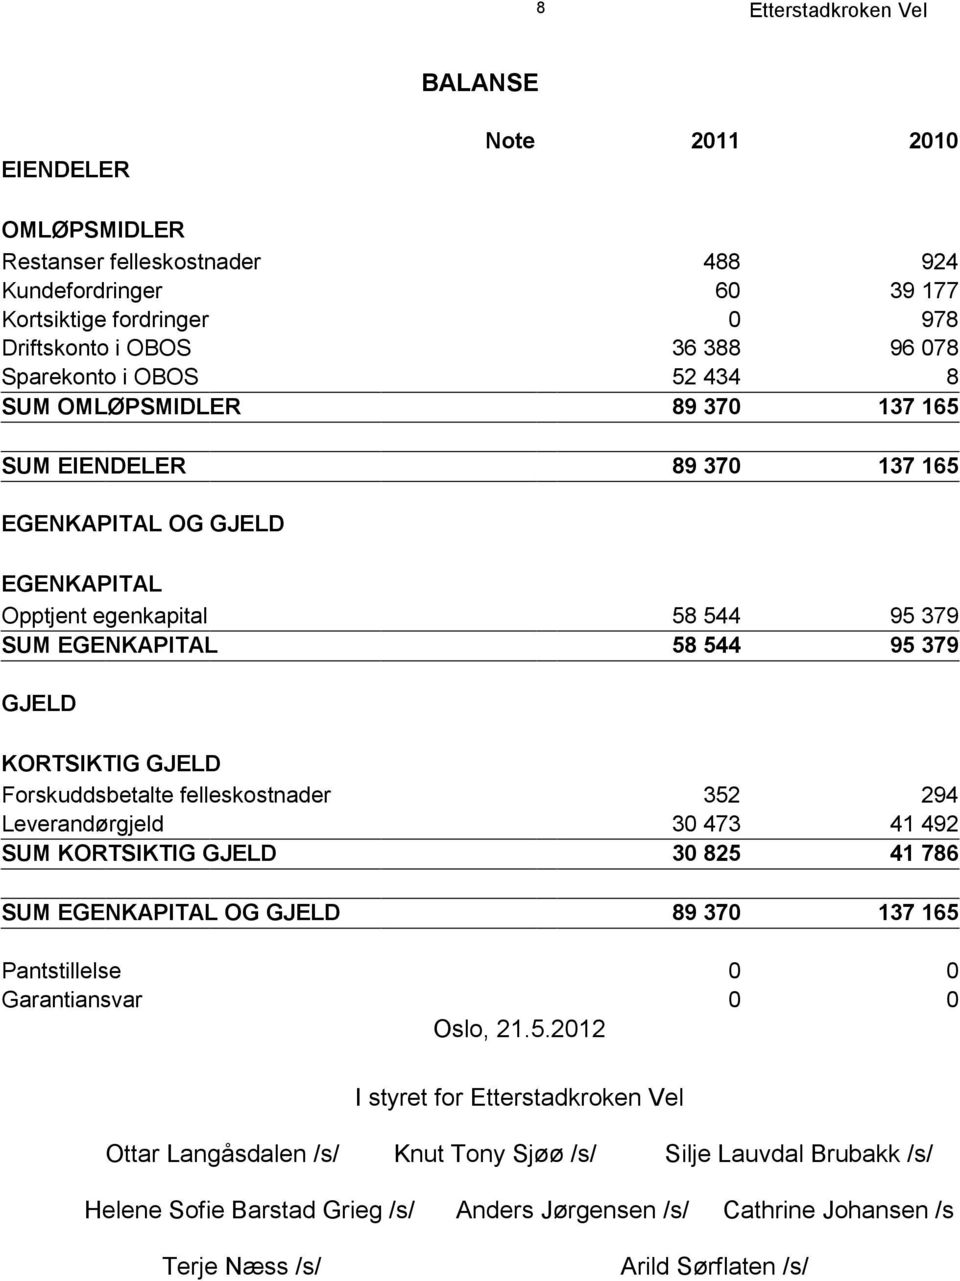 Forskuddsbetalte felleskostnader 352 294 Leverandørgjeld 30 473 41 492 SUM KORTSIKTIG GJELD 30 825 41 786 SUM EGENKAPITAL OG GJELD 89 370 137 165 Pantstillelse 0 0 Garantiansvar 0 0 Oslo, 21.